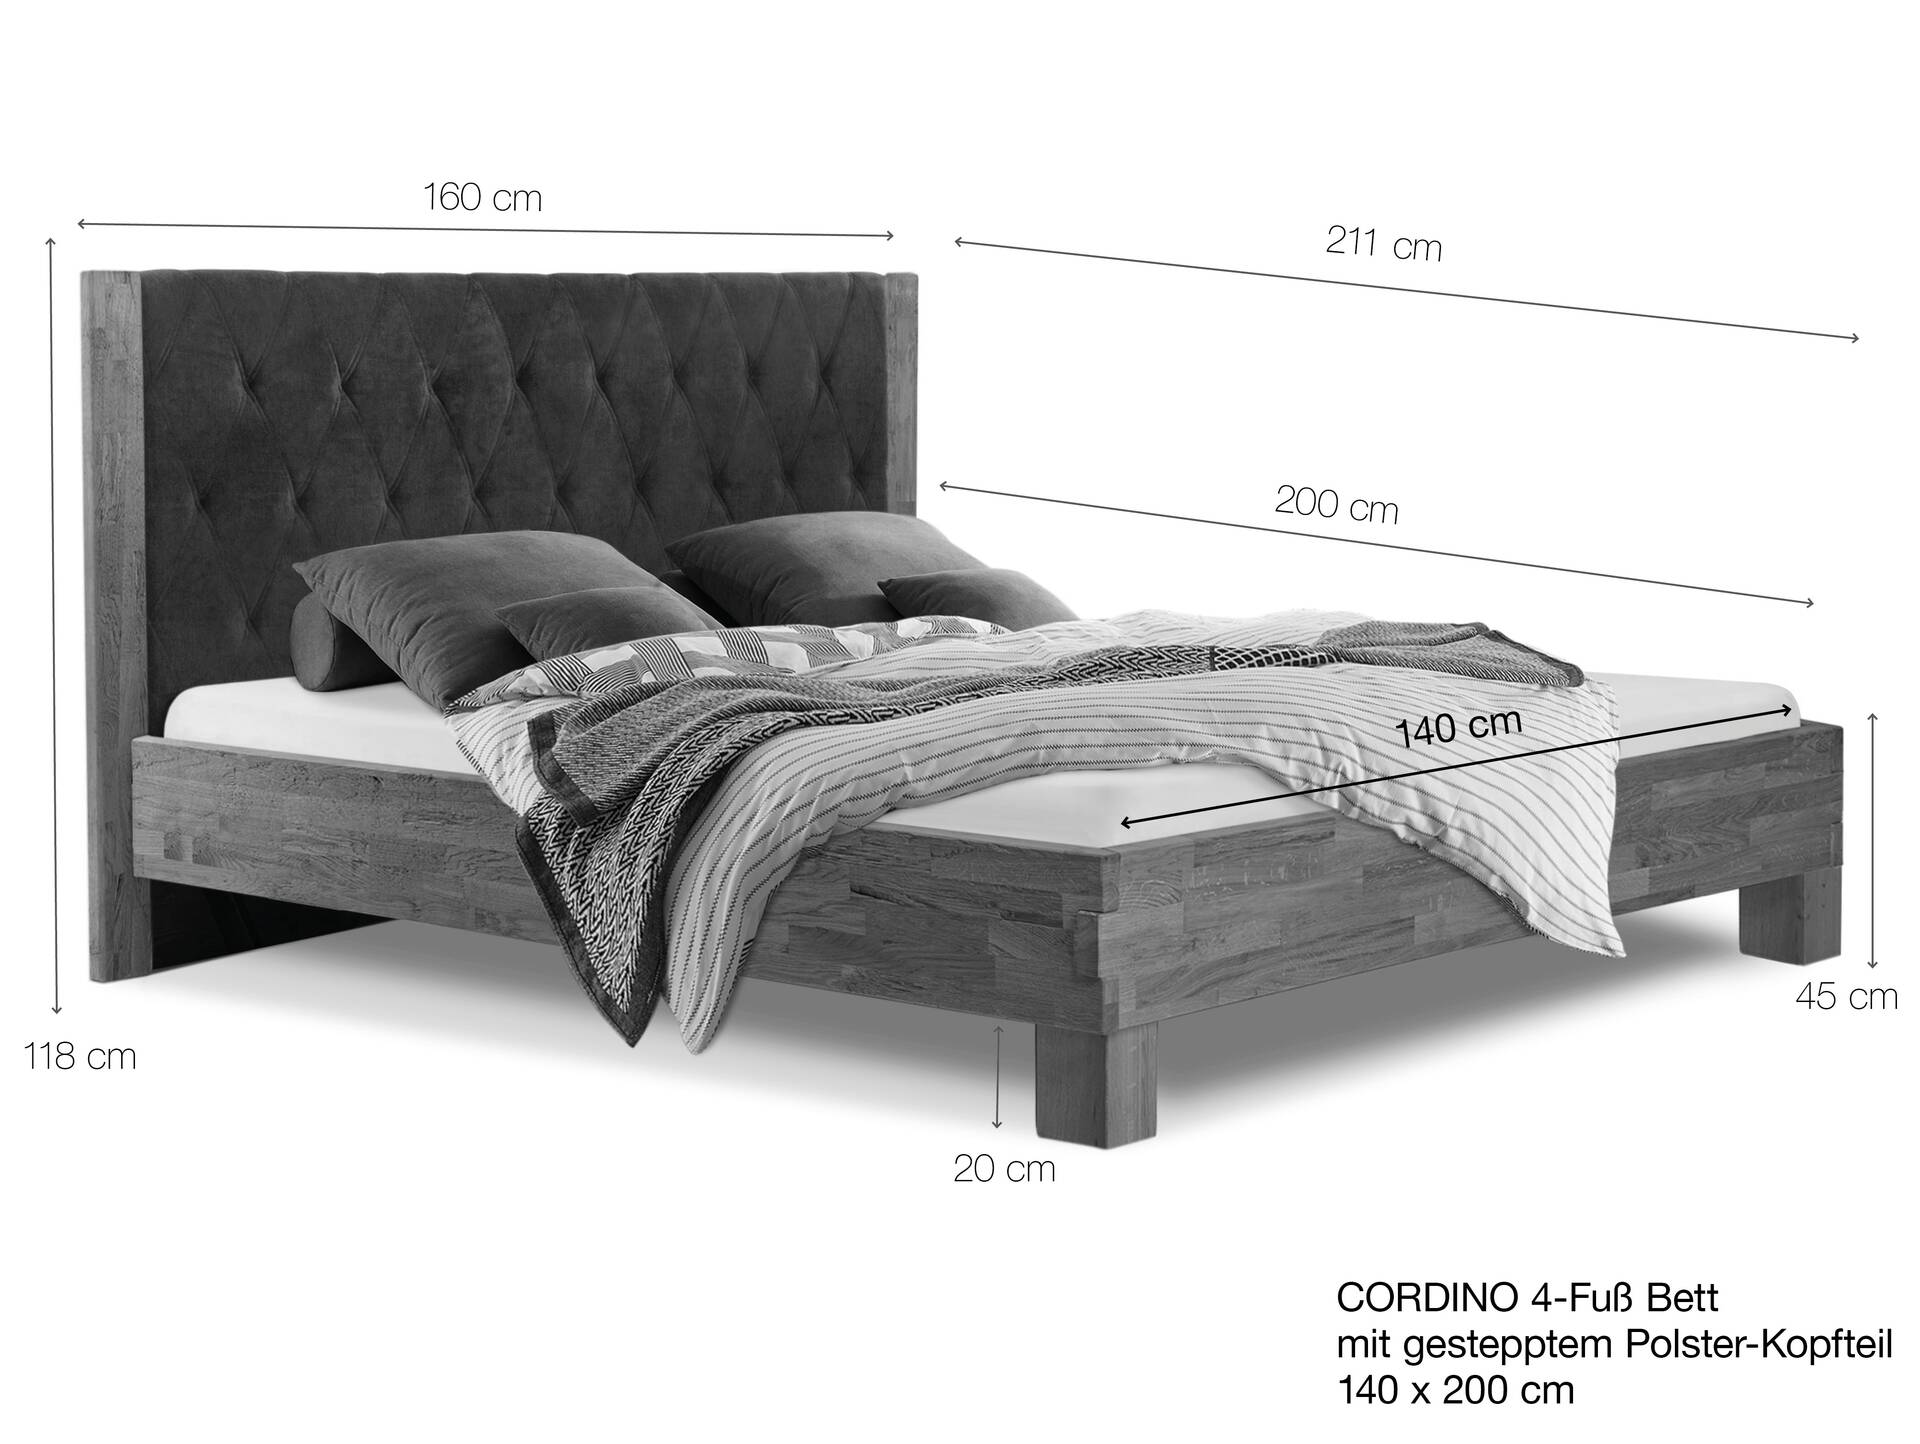 CORDINO 4-Fuß-Bett aus Eiche mit gestepptem Polster-Kopfteil, Material Massivholz 140 x 200 cm | Eiche unbehandelt | Stoff Braun | gebürstet